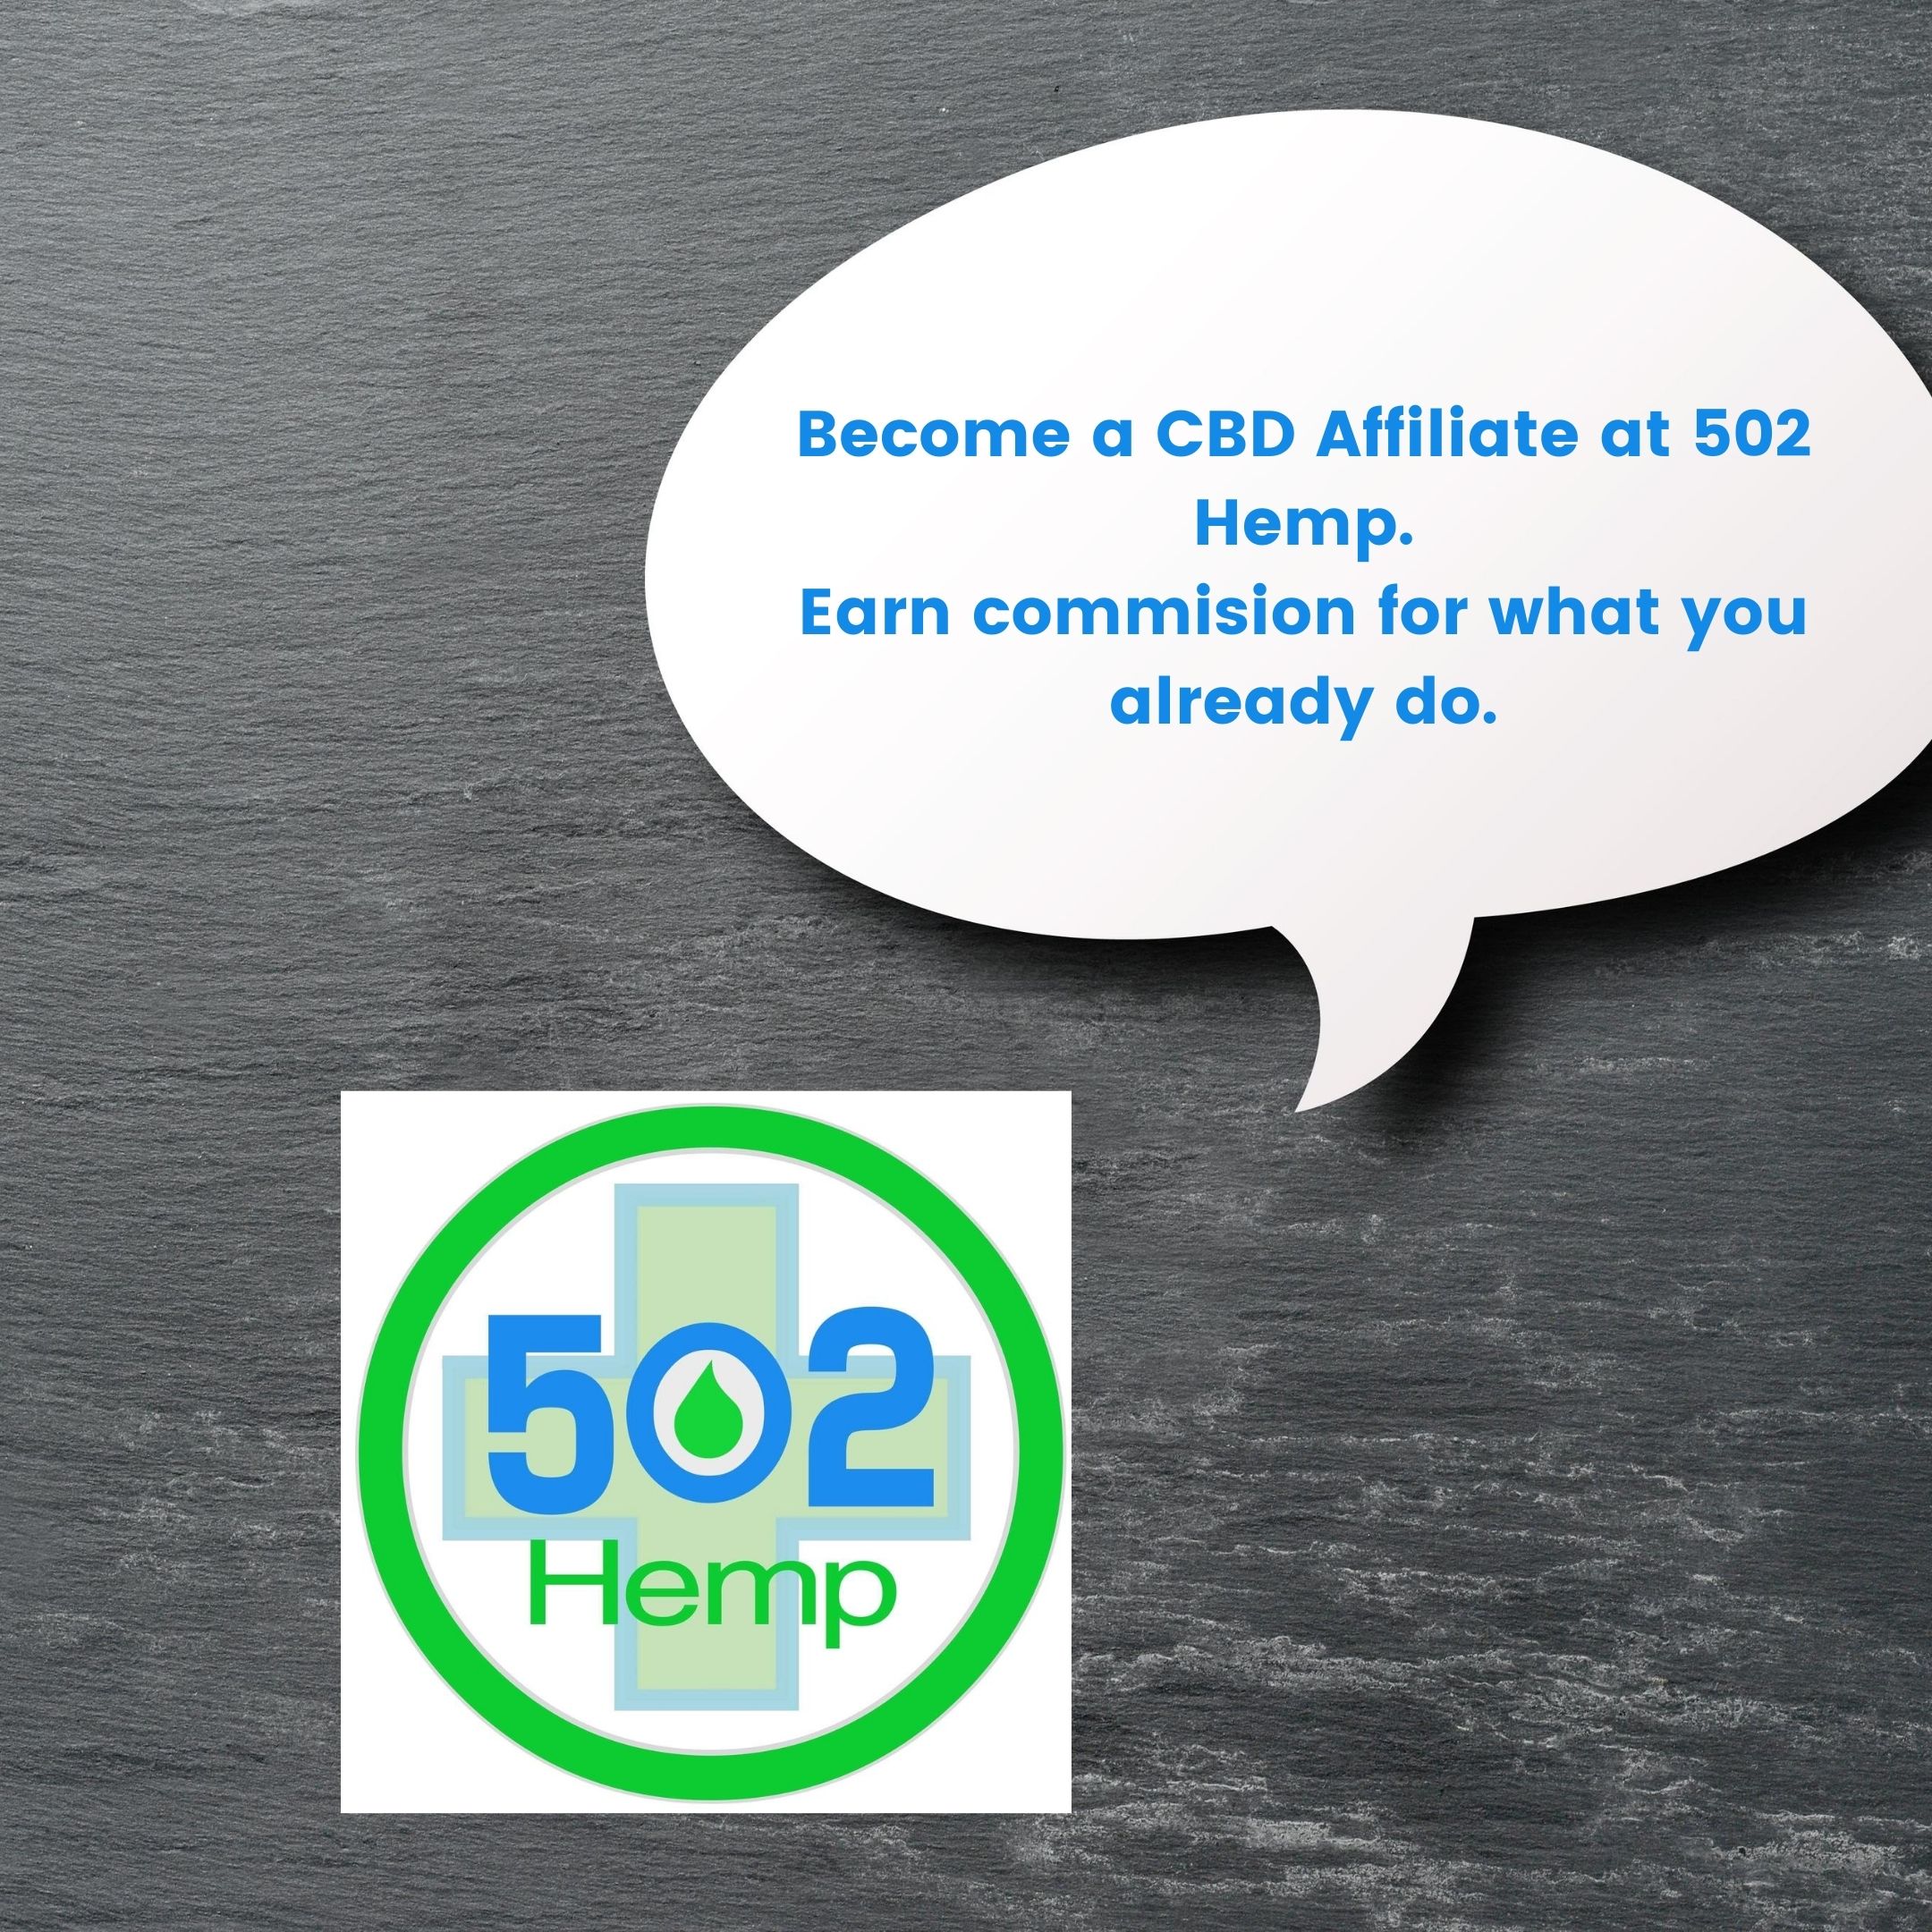 Become a CBD Affiliate at 502 Hemp